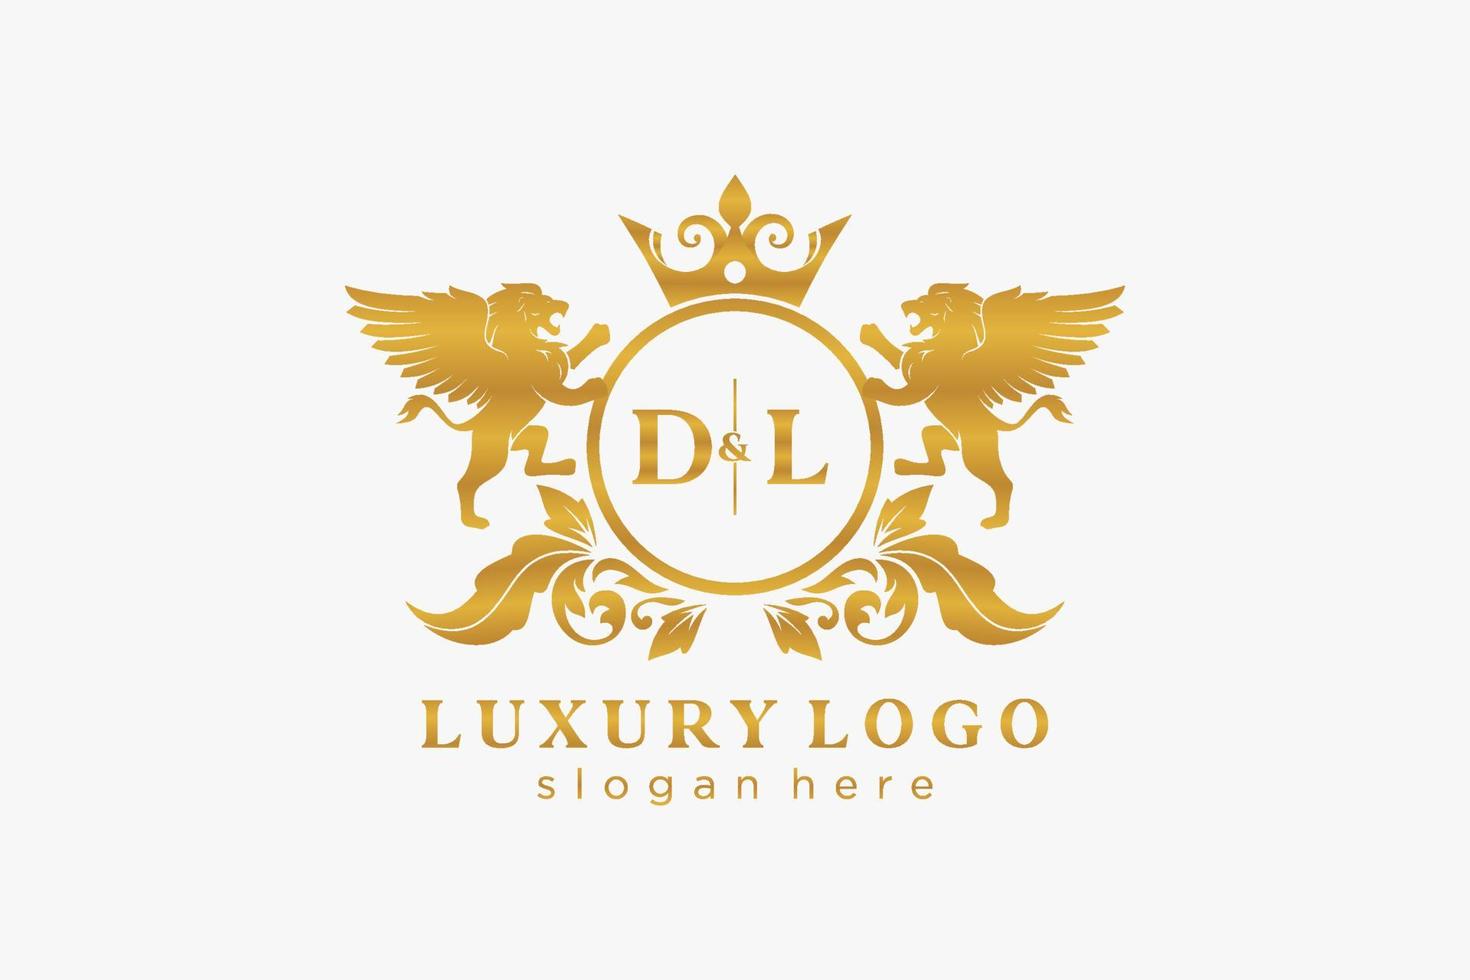 Anfangs-DL-Buchstabe Lion Royal Luxury Logo-Vorlage in Vektorgrafiken für Restaurant, Lizenzgebühren, Boutique, Café, Hotel, Heraldik, Schmuck, Mode und andere Vektorillustrationen. vektor